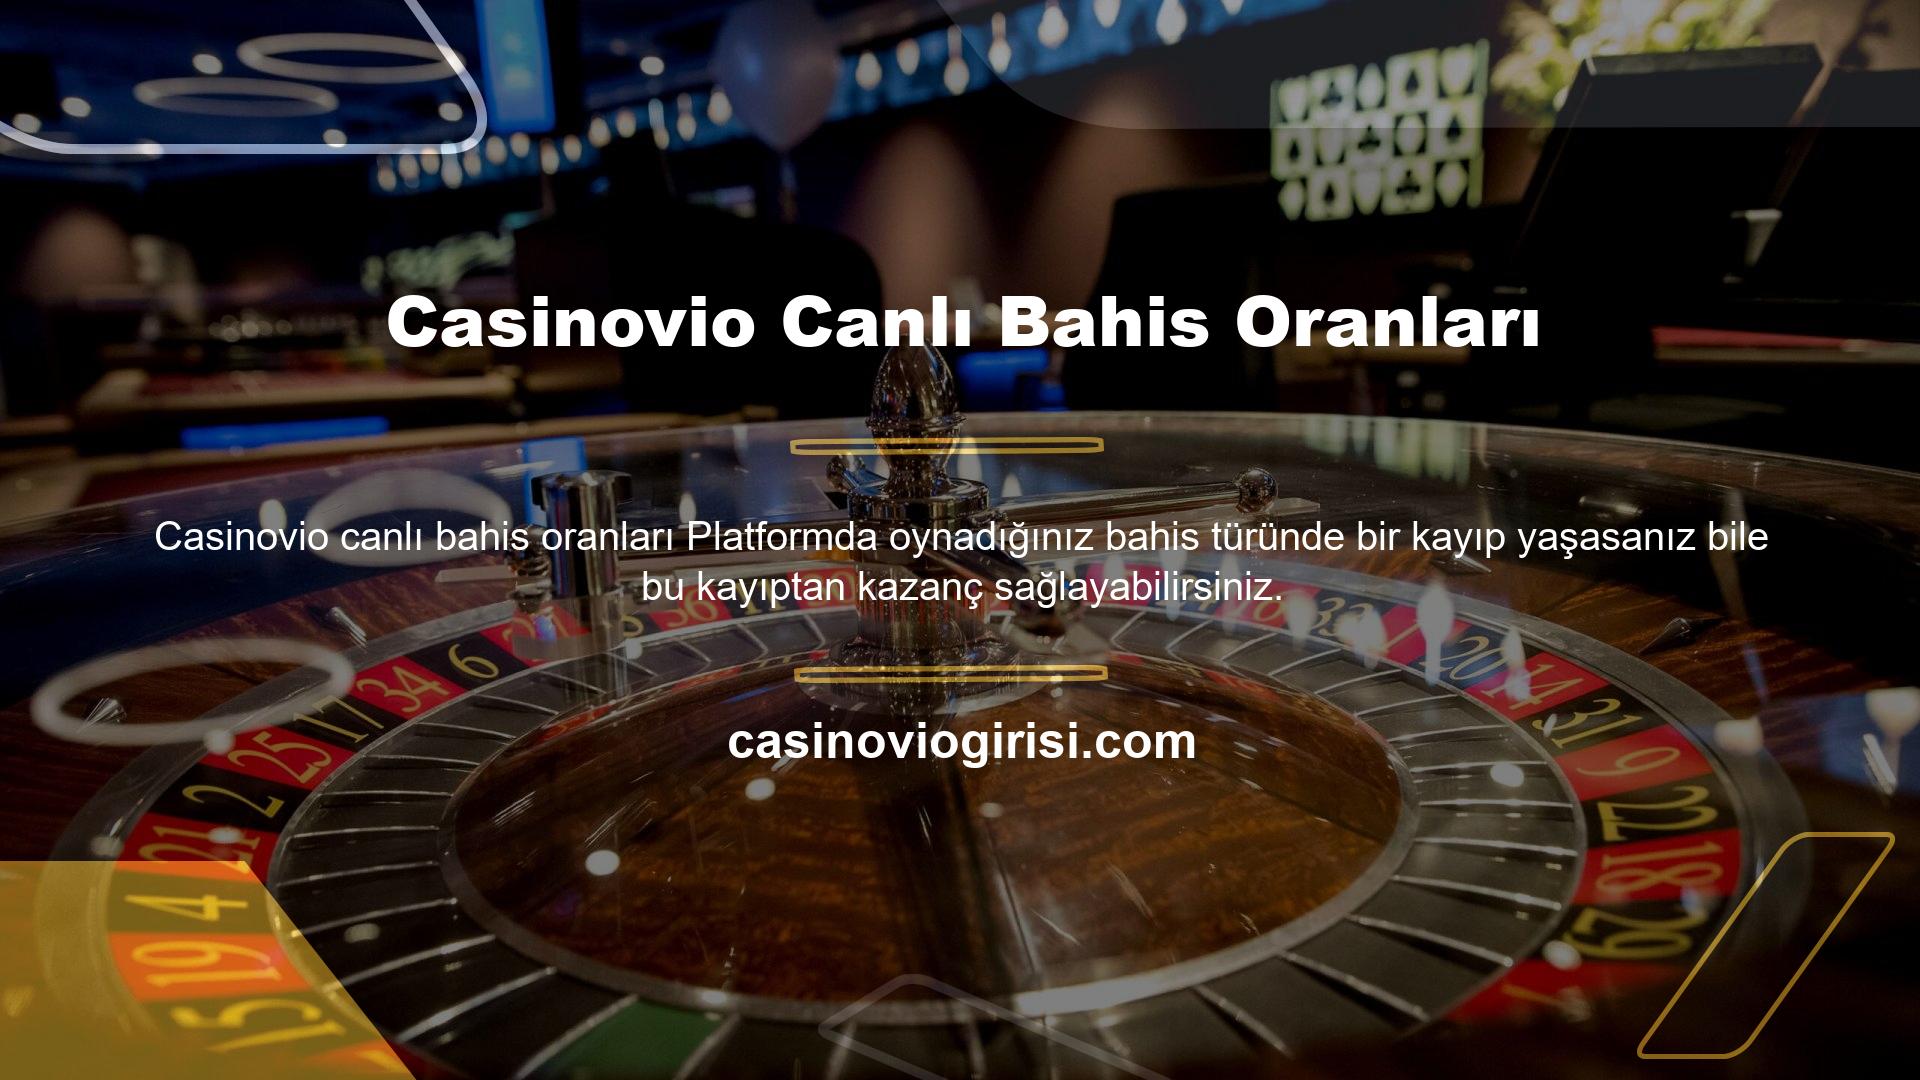 Casinovio, spor bahisleri promosyonlarında kullanıcılara kaybettiklerinde kayıp bonusları sunarak müşteri memnuniyetsizliklerini en iyi şekilde ortadan kaldırmak için çalışmalarına devam etmektedir